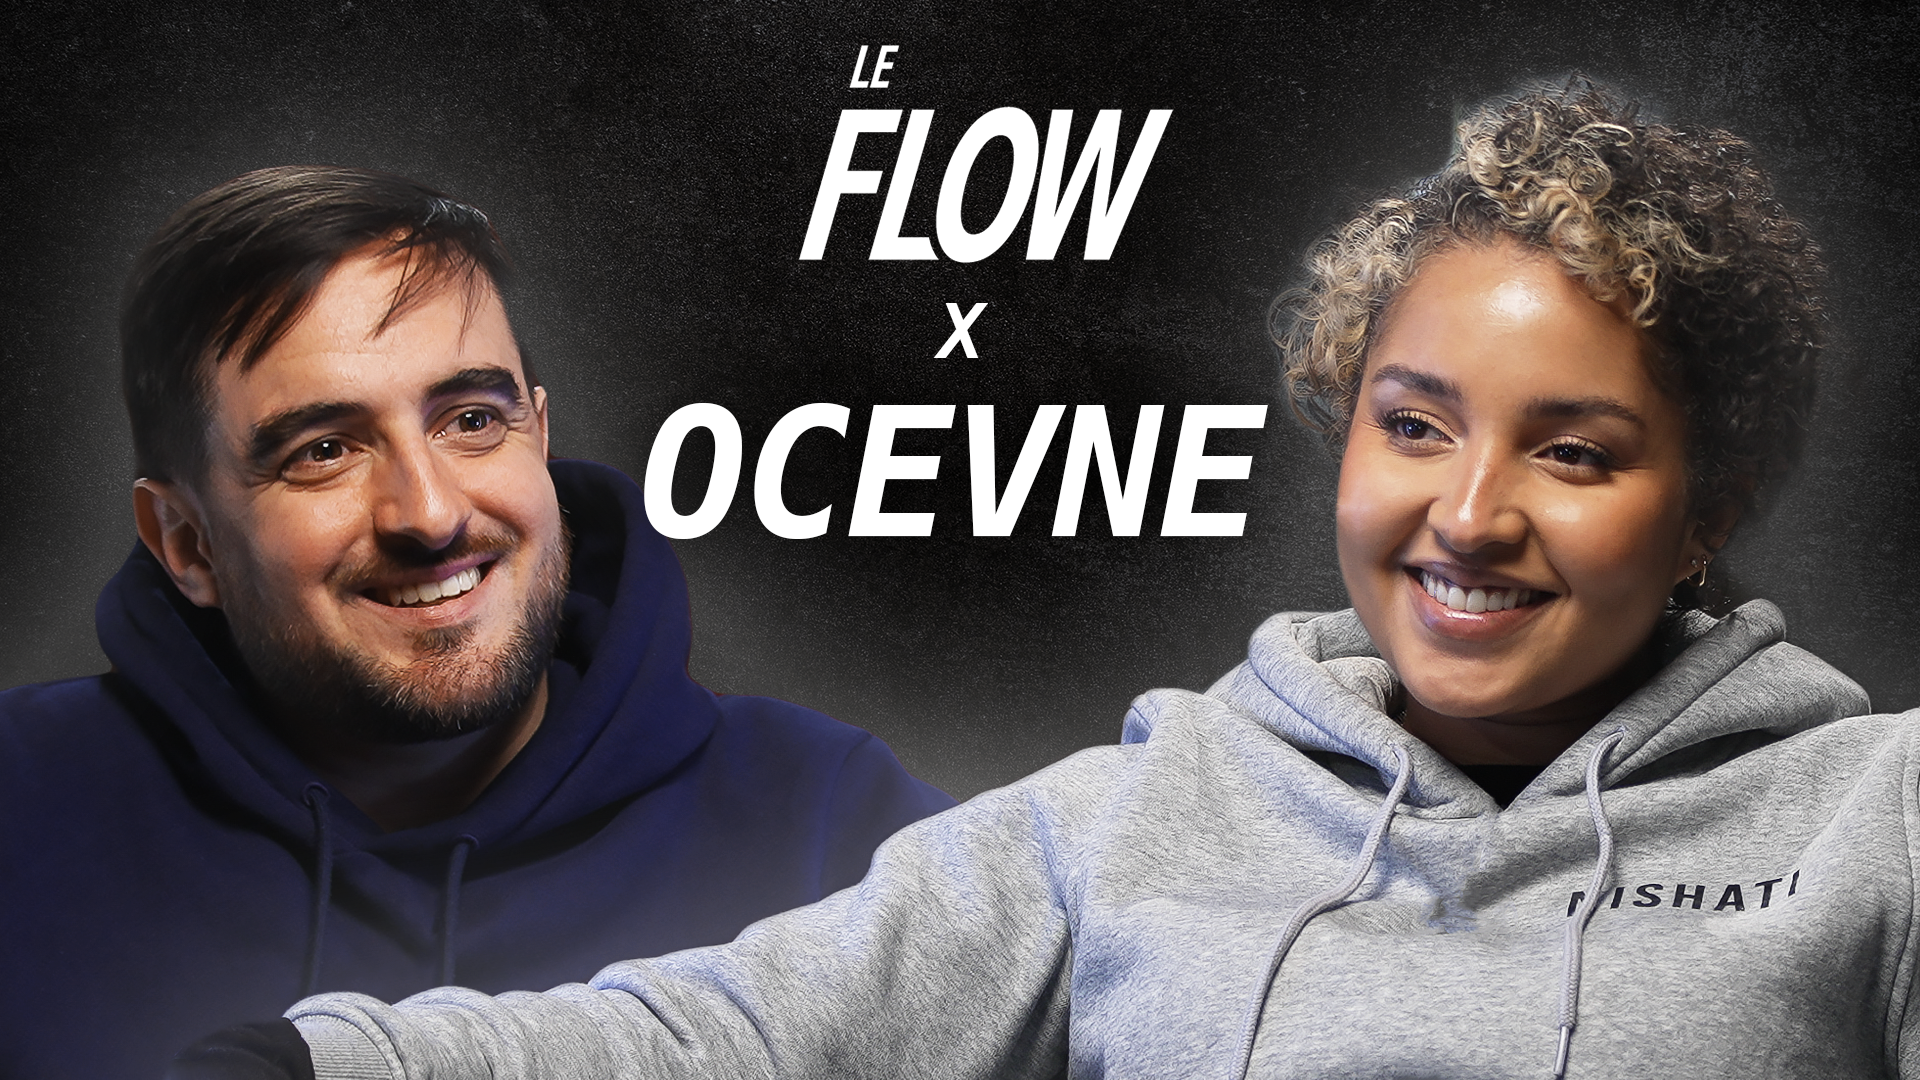 Le Flow x OCEVNE - YOUTUBE